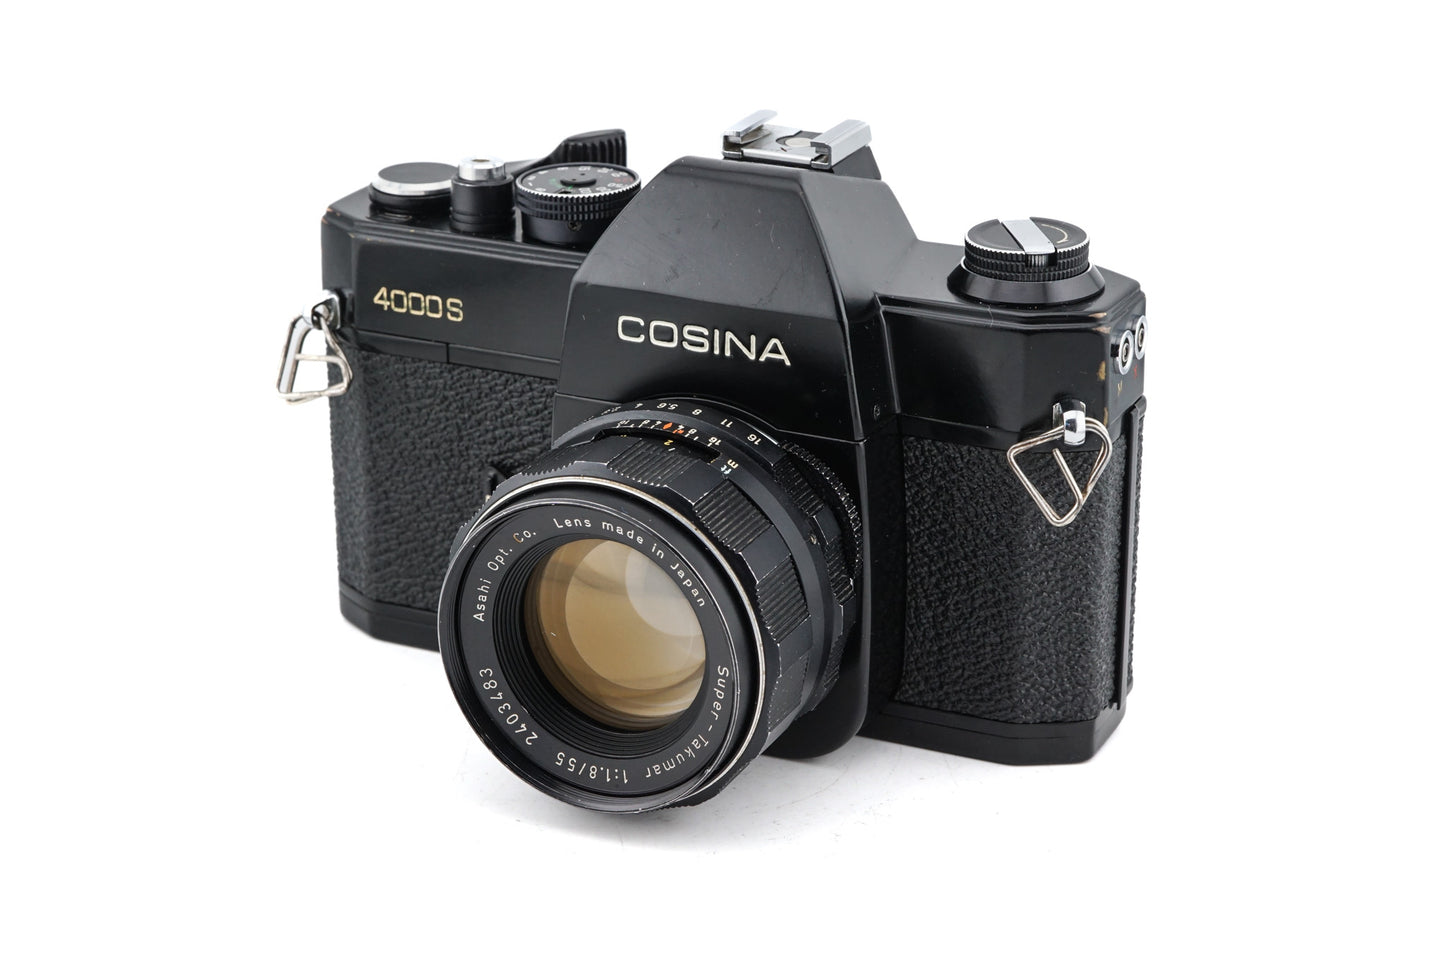 Cosina 4000S + 55mm f1.8 Super-Takumar